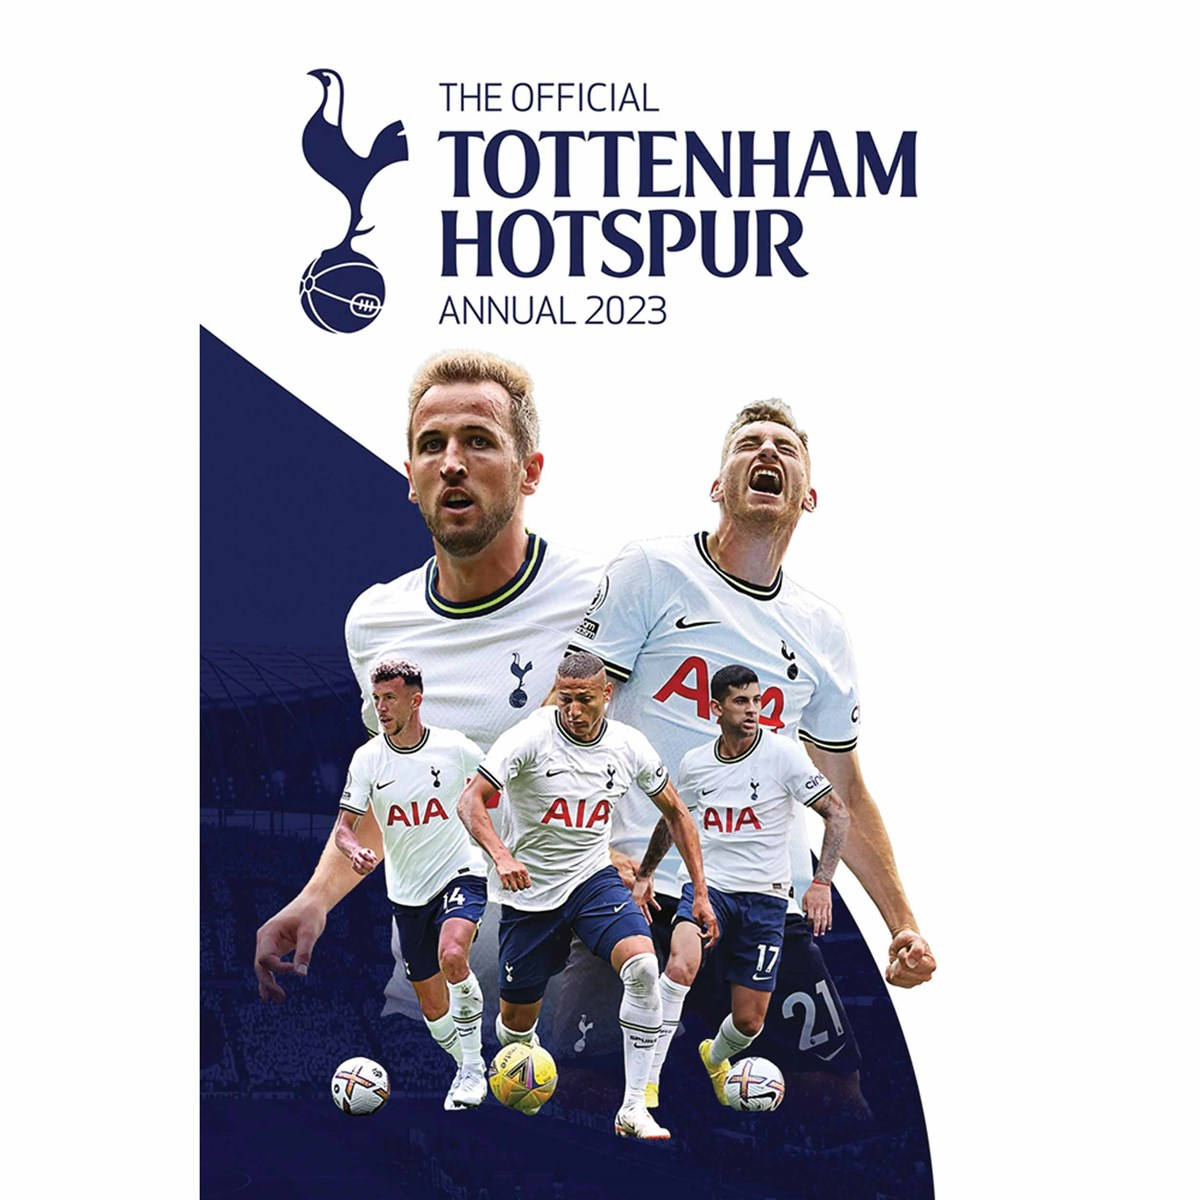 Fondode Pantalla Para Móvil Del Tottenham Hotspur Fc En Color Azul Y Blanco Fondo de pantalla